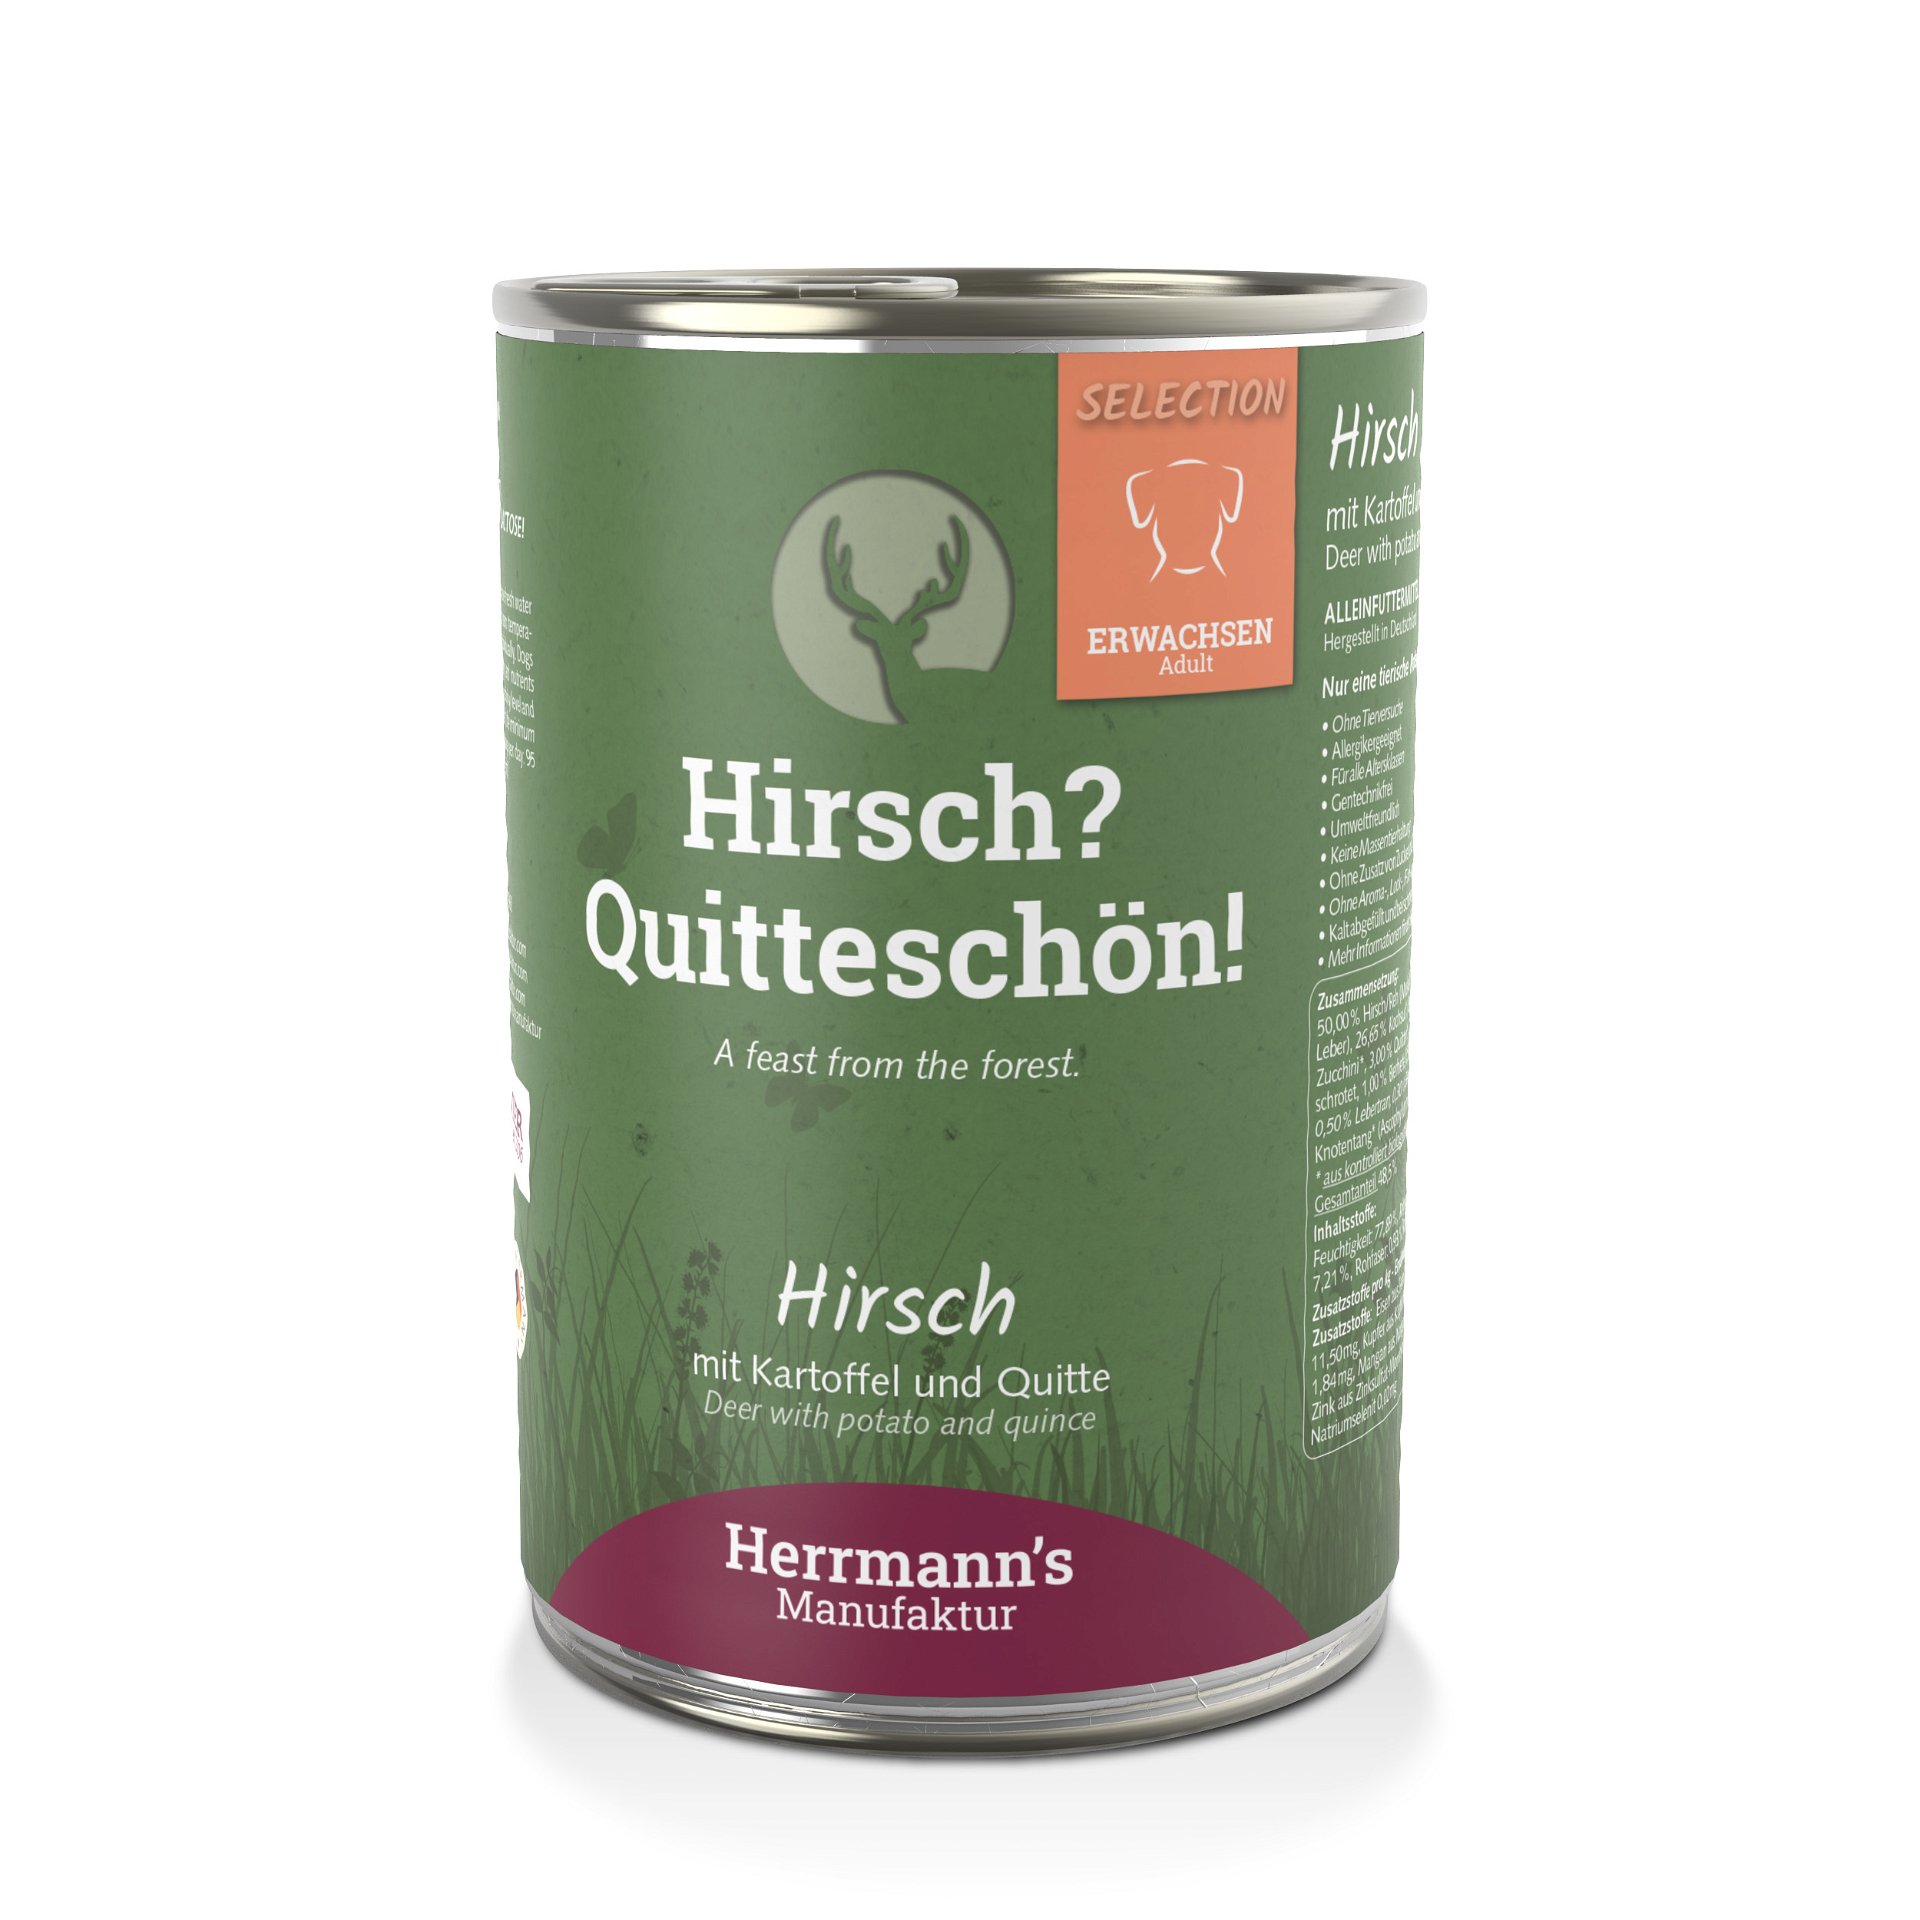 Selection - Hirsch mit Kartoffel und Quitte